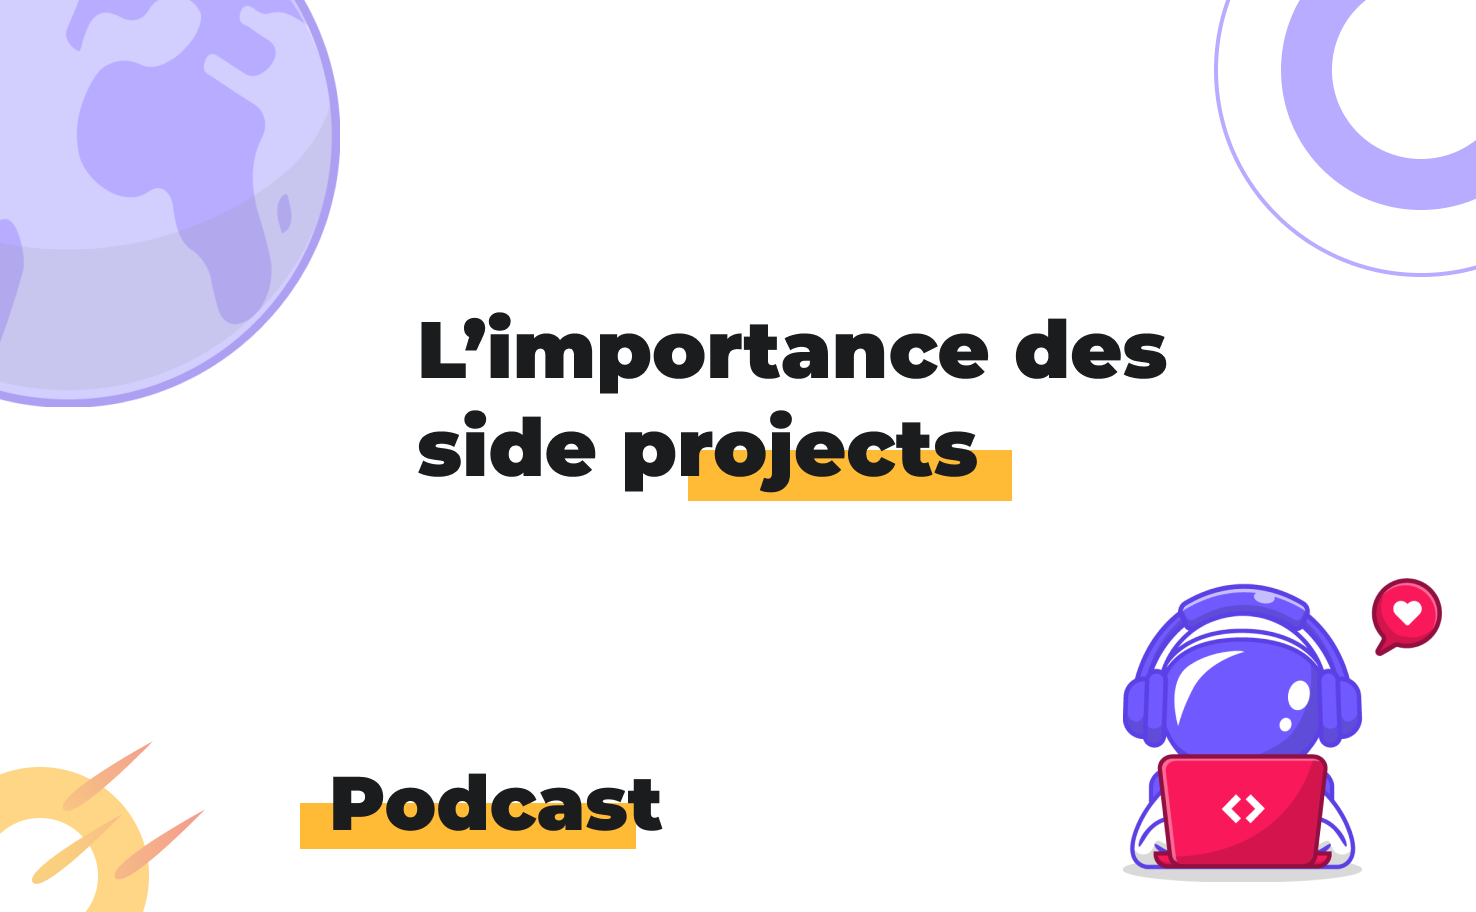 L'image affiche le sujet du podcast: L'importance des side projects